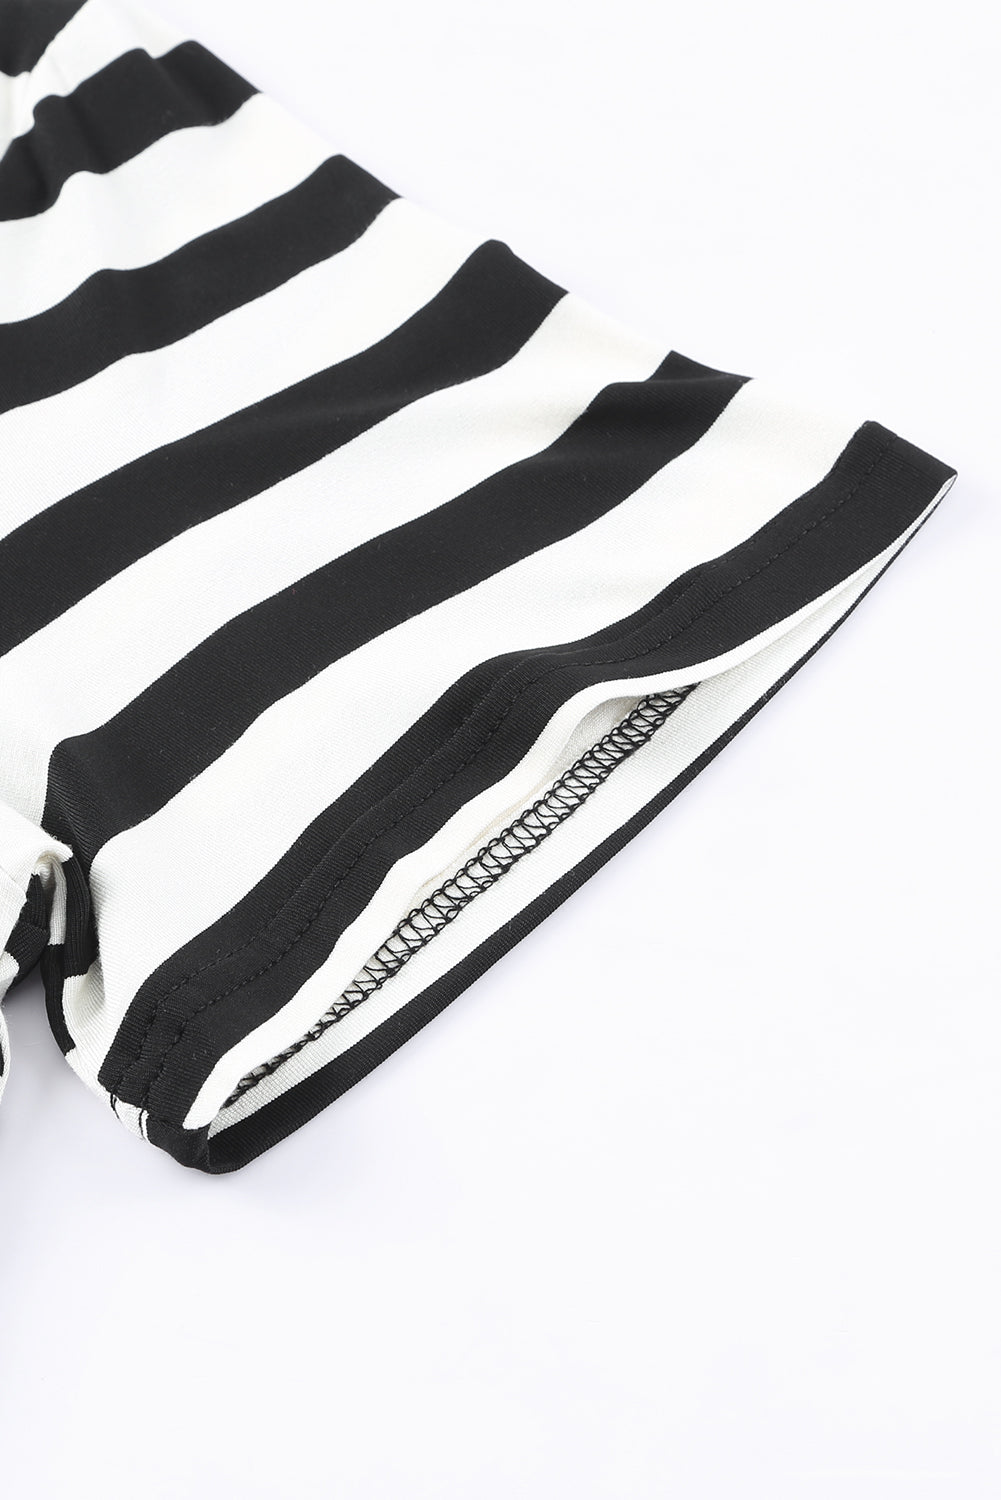 Black Casual Striped Print V Neck Side Split Maxi Dress